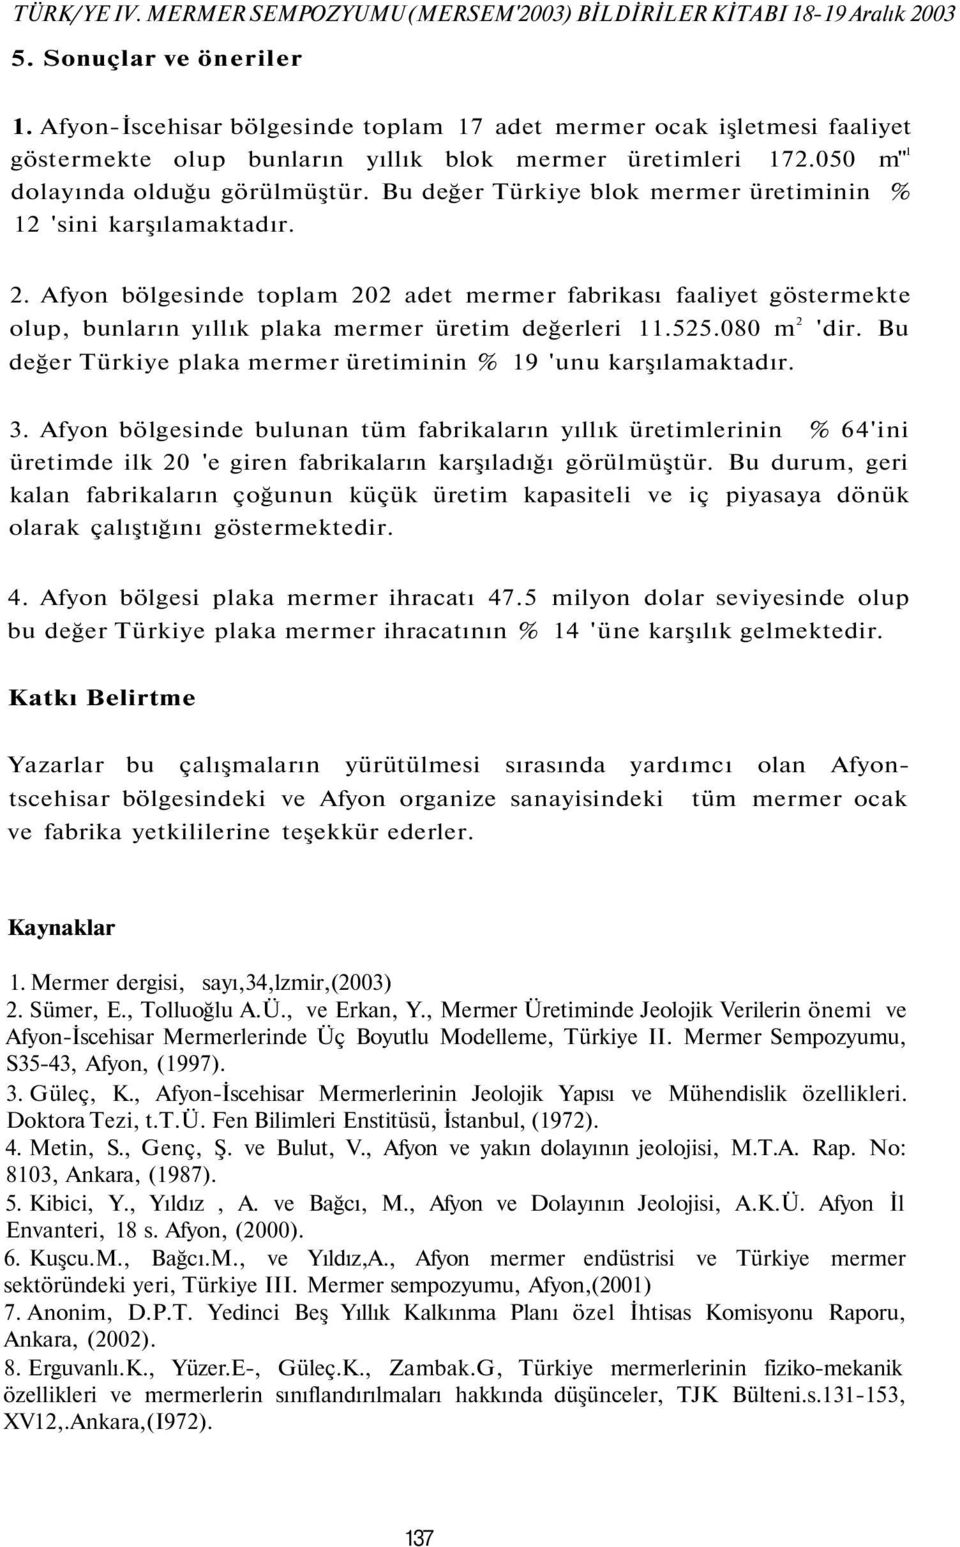 Bu değer Türkiye blok mermer üretiminin % 'sini karşılamaktadır.. Afyon bölgesinde toplam 0 adet mermer fabrikası faaliyet göstermekte olup, bunların yıllık plaka mermer üretim değerleri..080 m 'dir.